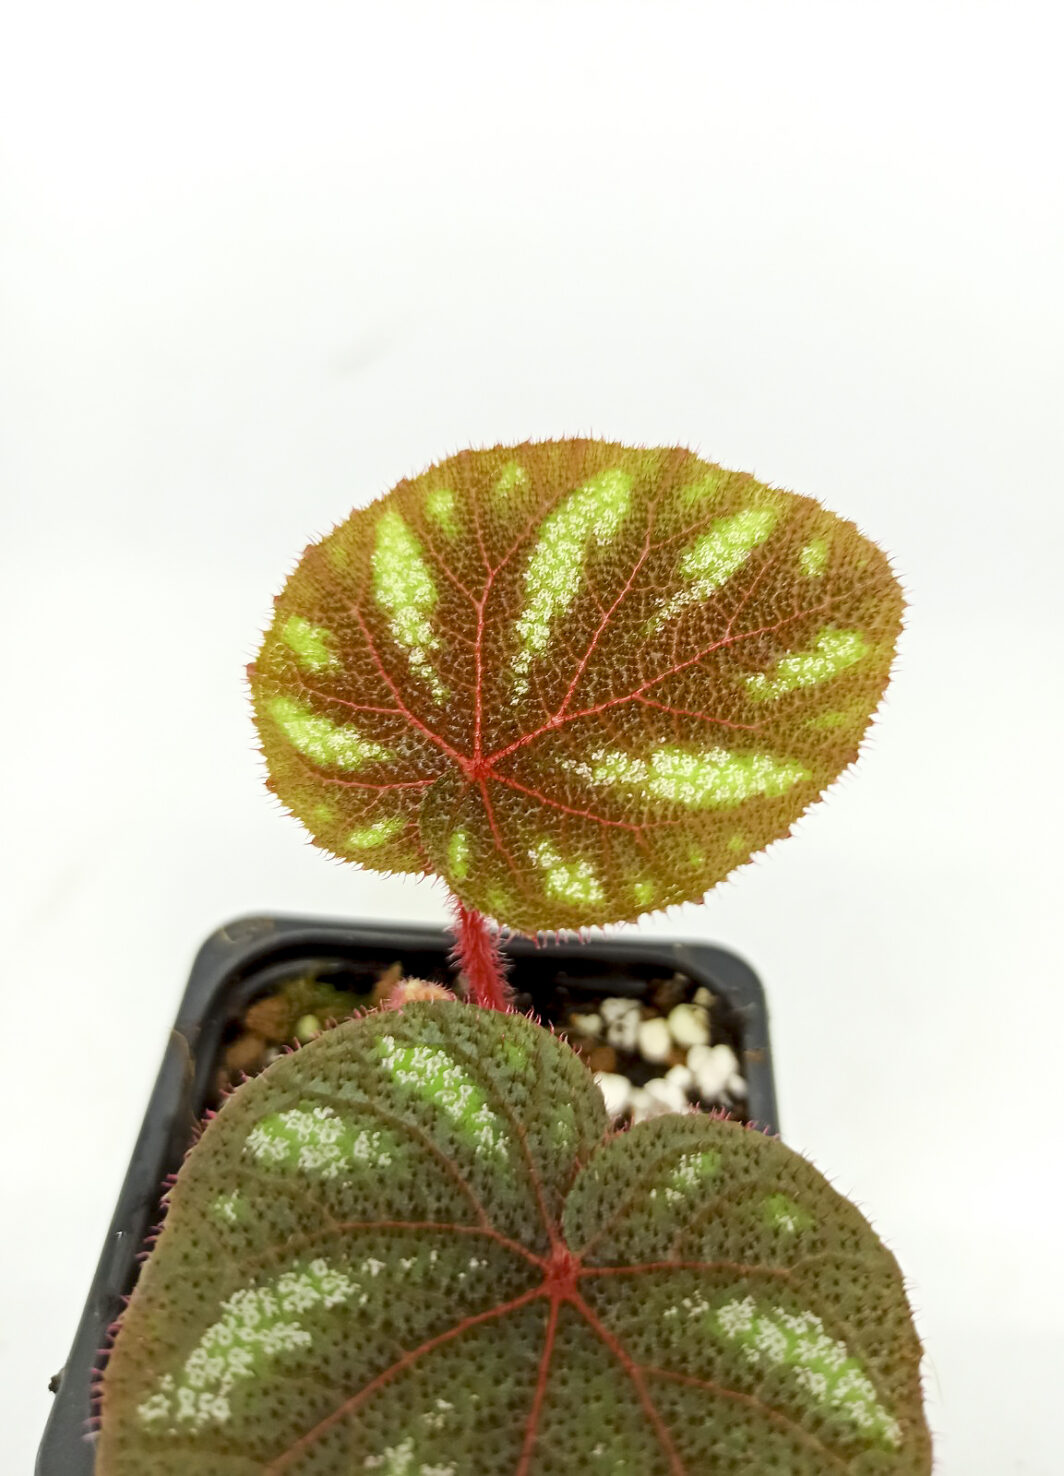 Begonia versicolor